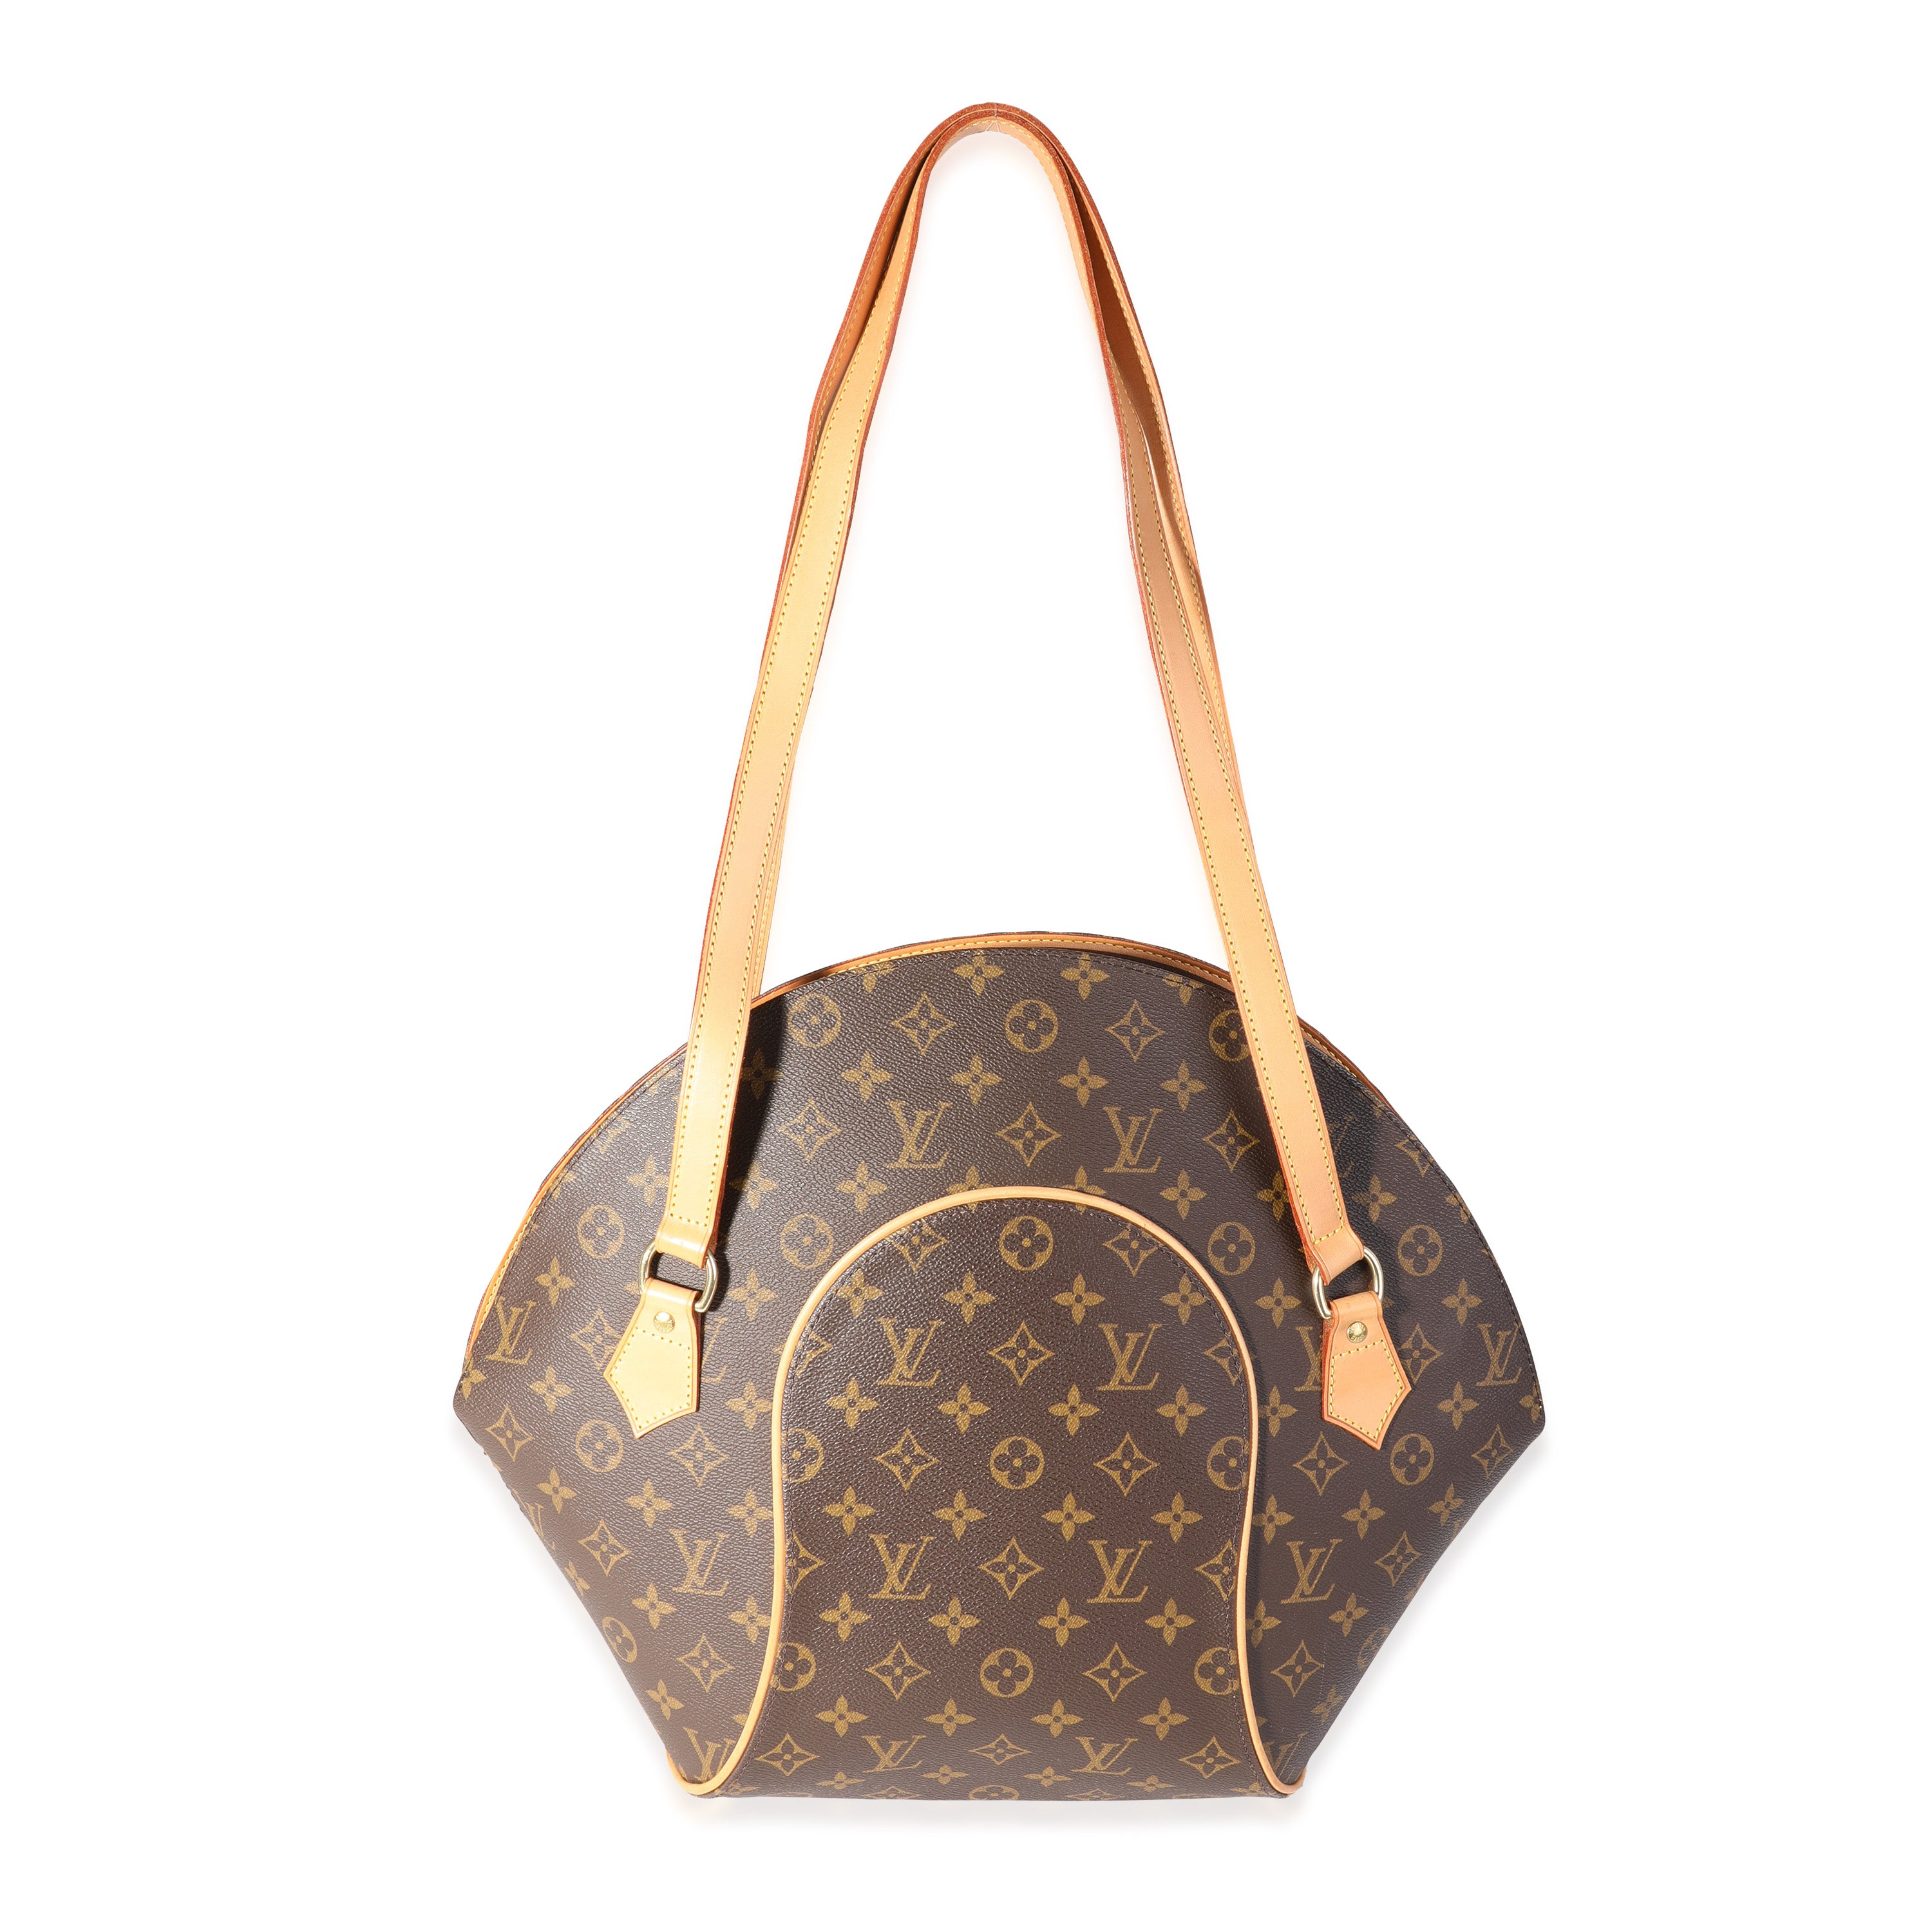 Authentic Louis Vuitton Monogram Ellipse Large Handbag - Includes